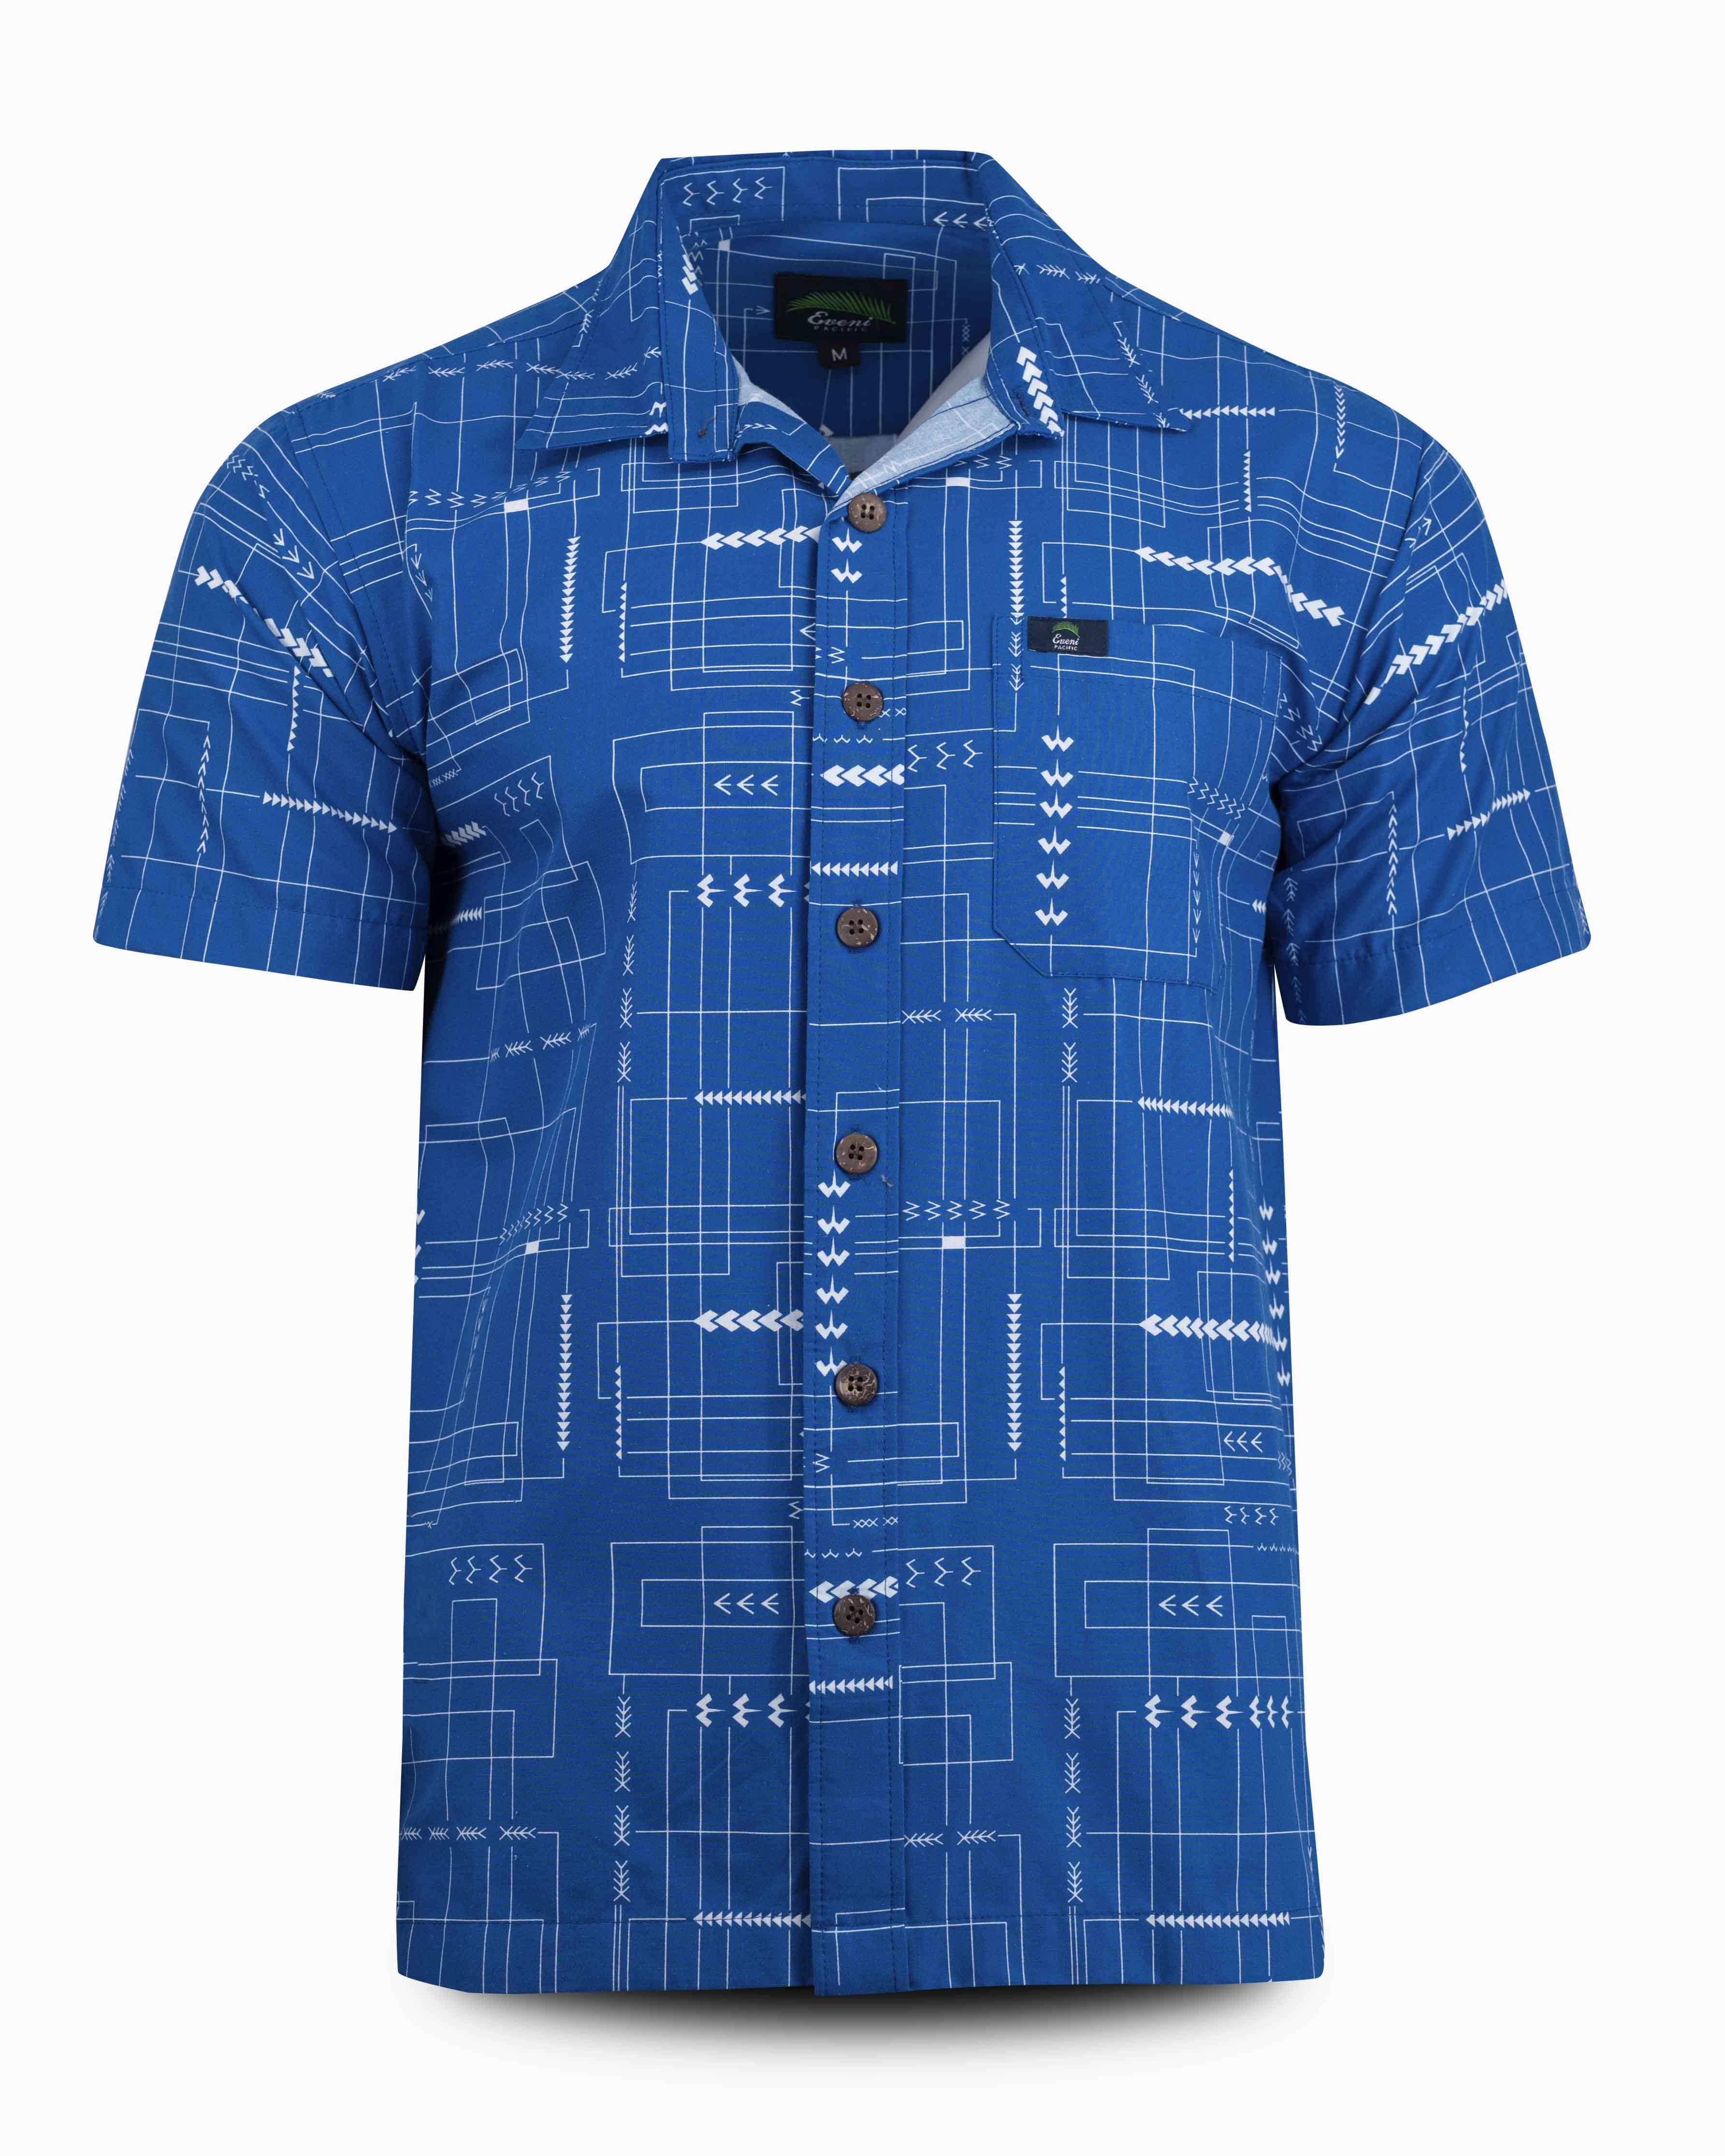 Eveni Pacific Men's Classic Shirt - MATHIJS BLUE